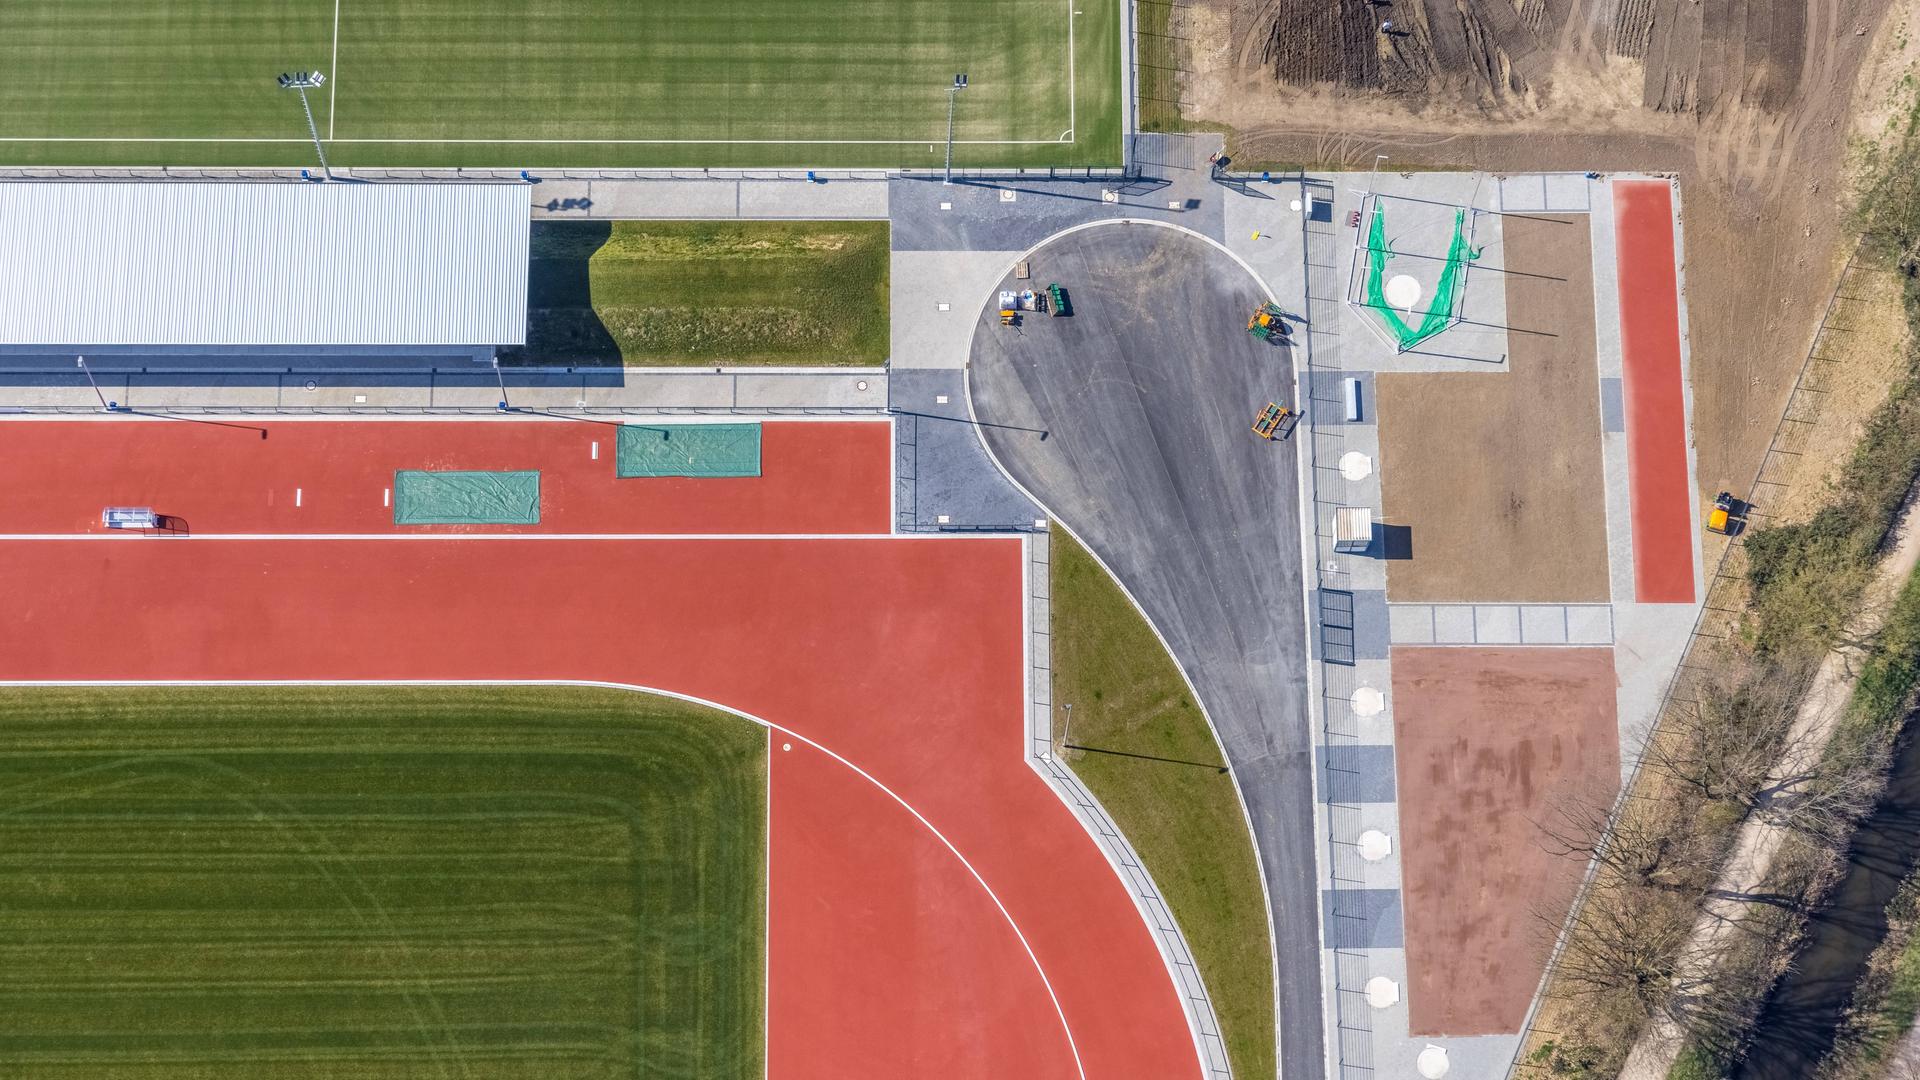 Luftbildaufnahme von der Baustelle für neue Fußballplätze und Sportanlage von einem Sportverein. 